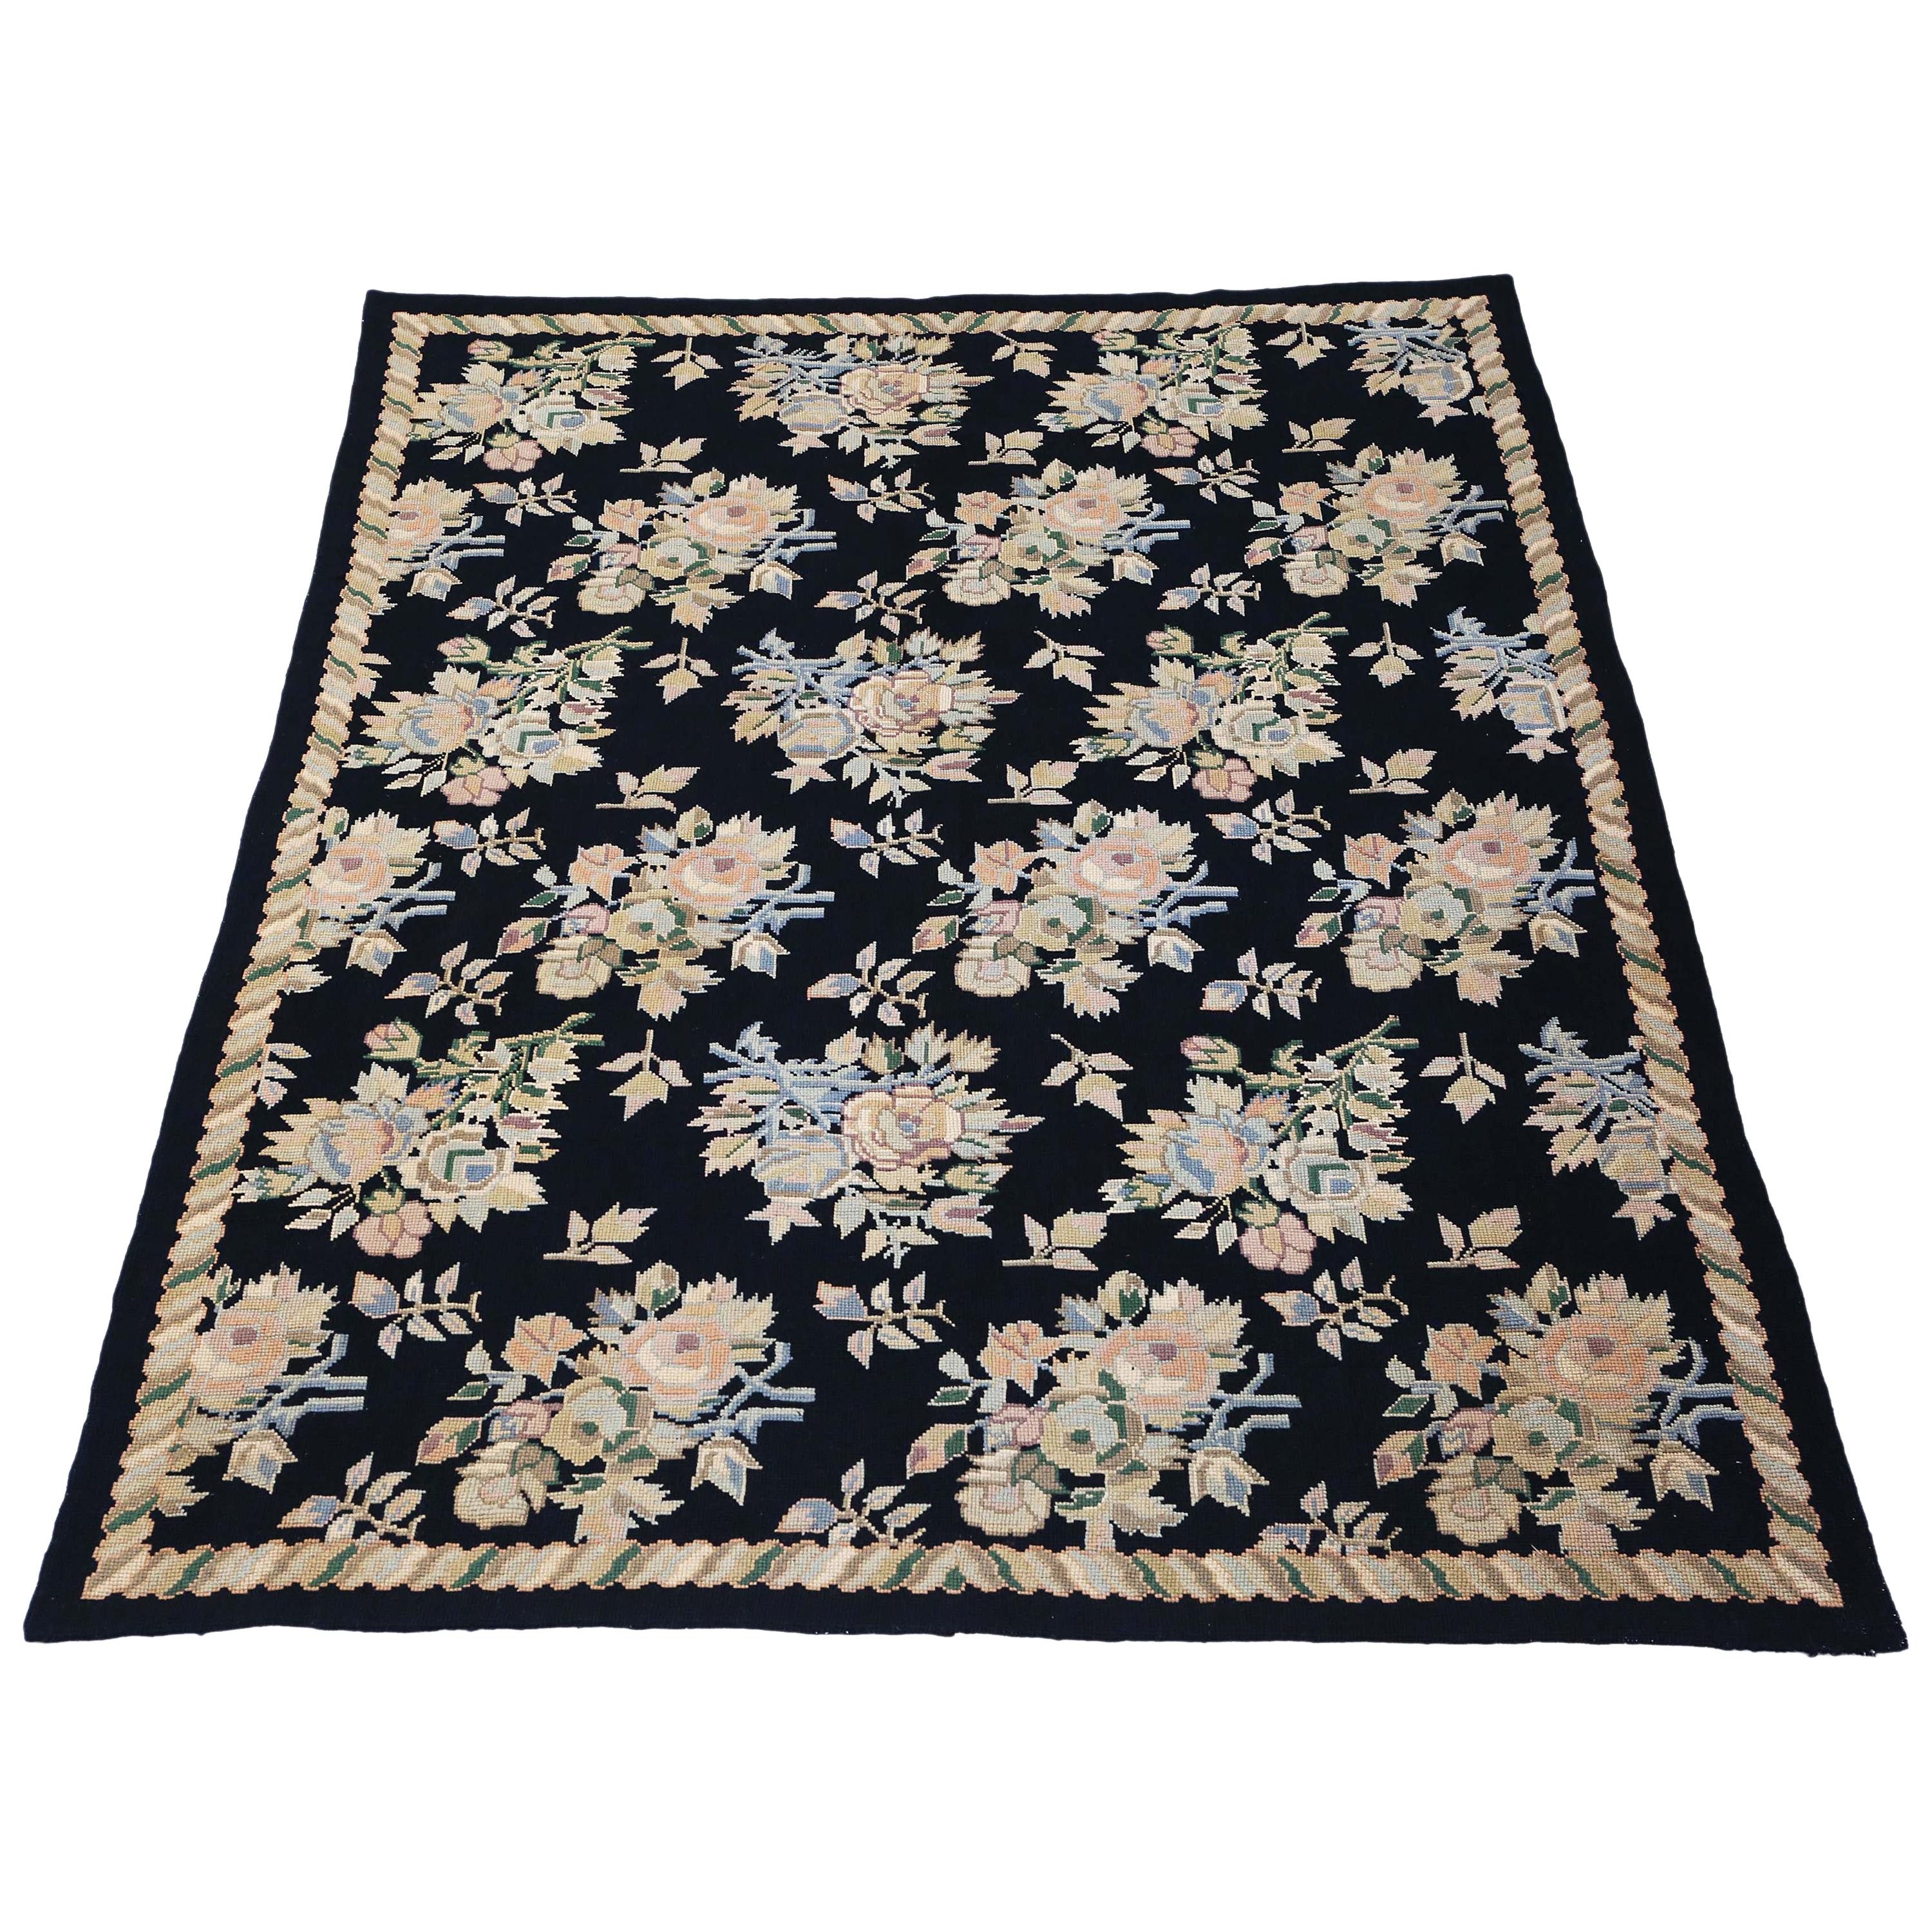 Large William Morris Style Needlepoint Rug Carpet